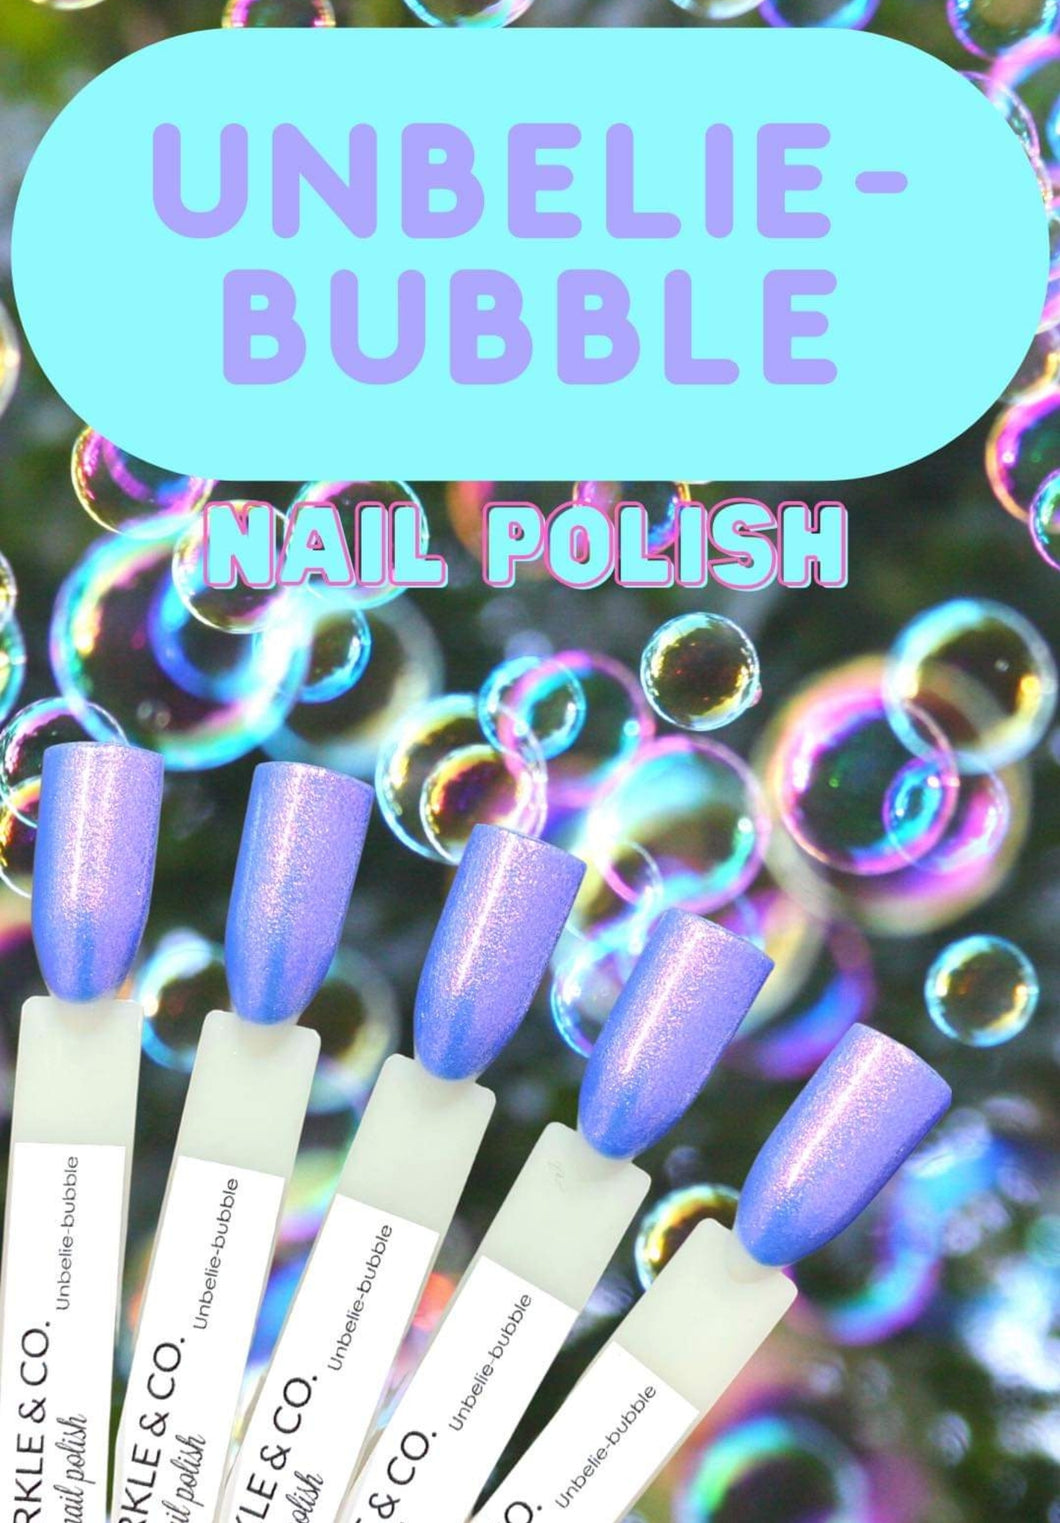 Unbelie-bubble Polish